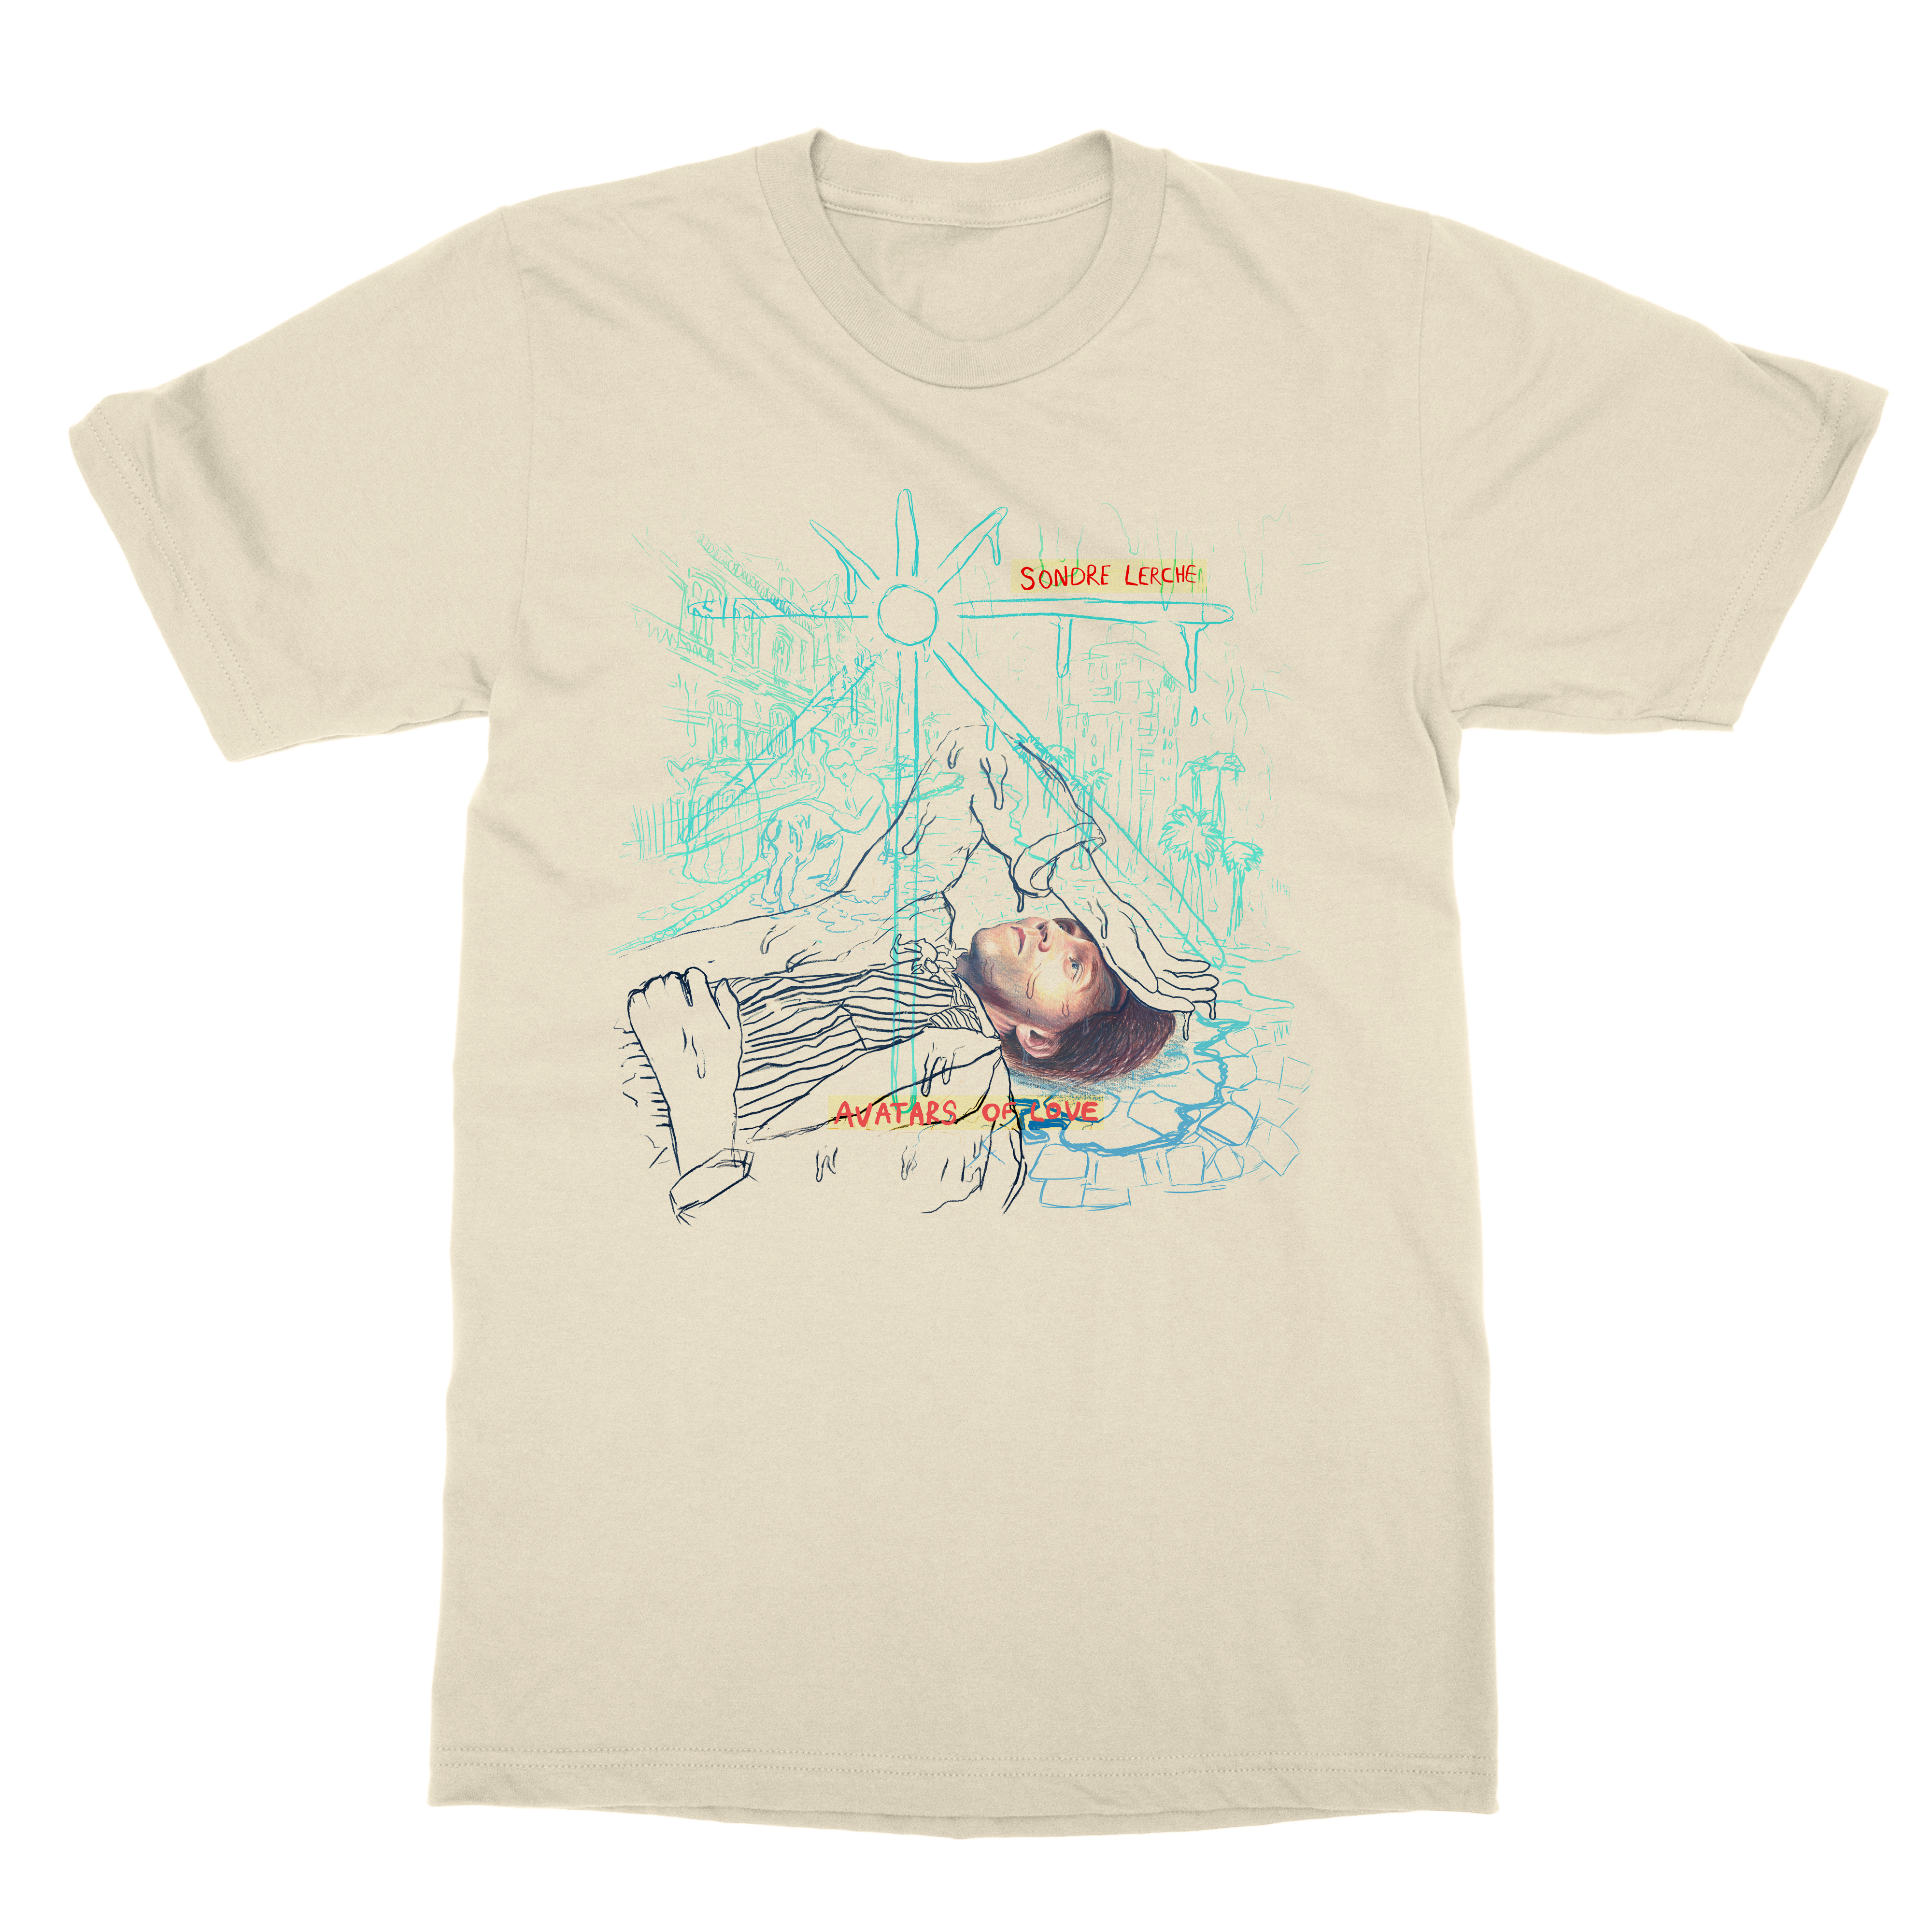 Sondre Lerche | Avatars Of Love Album Art T-Shirt